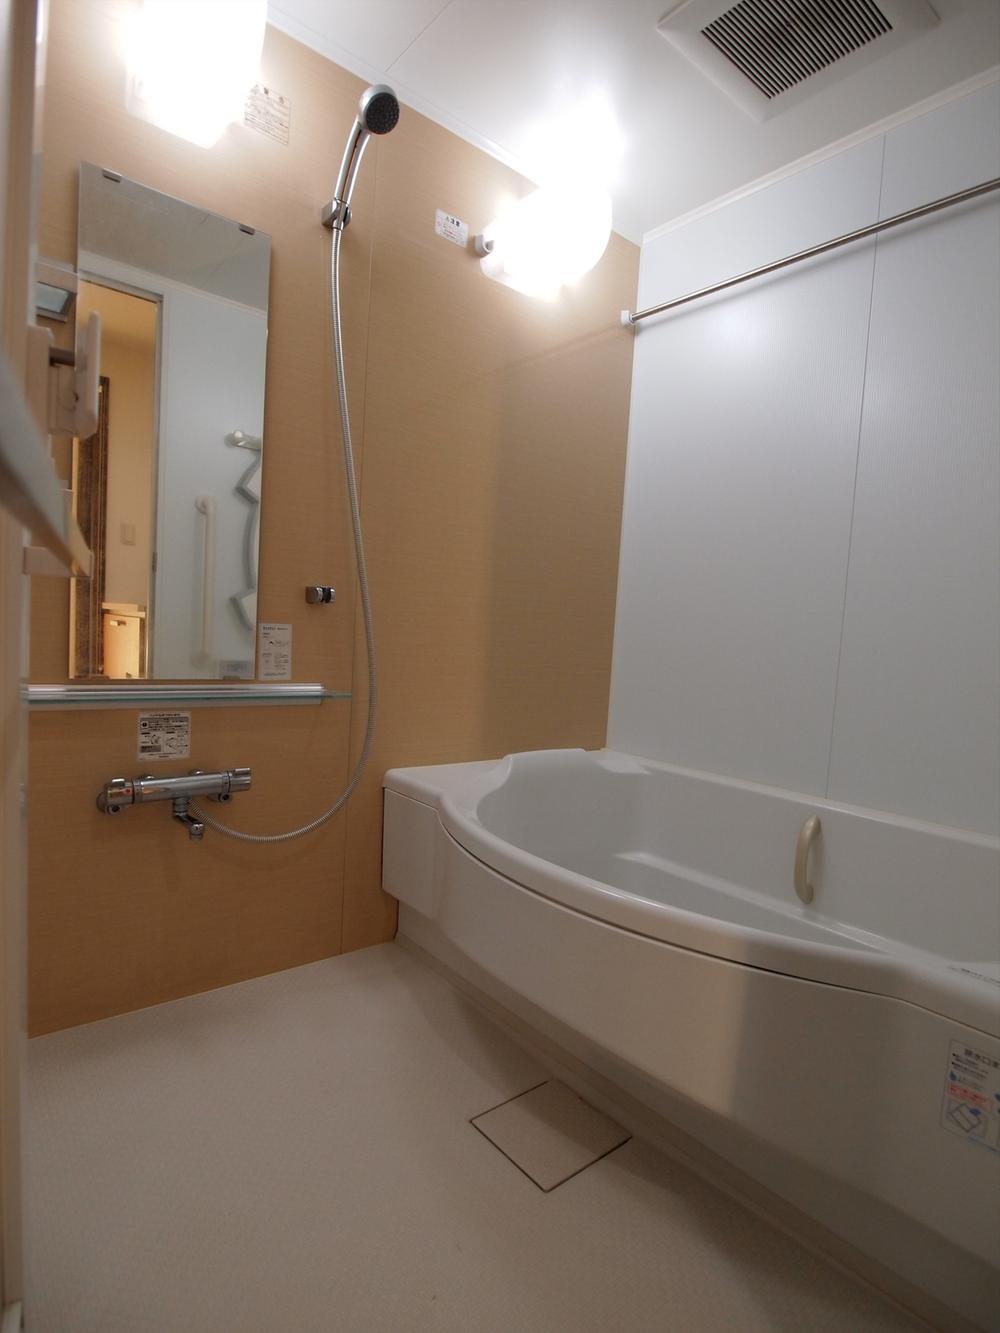 Bathroom. Worry a bath in a 24-hour ventilation system